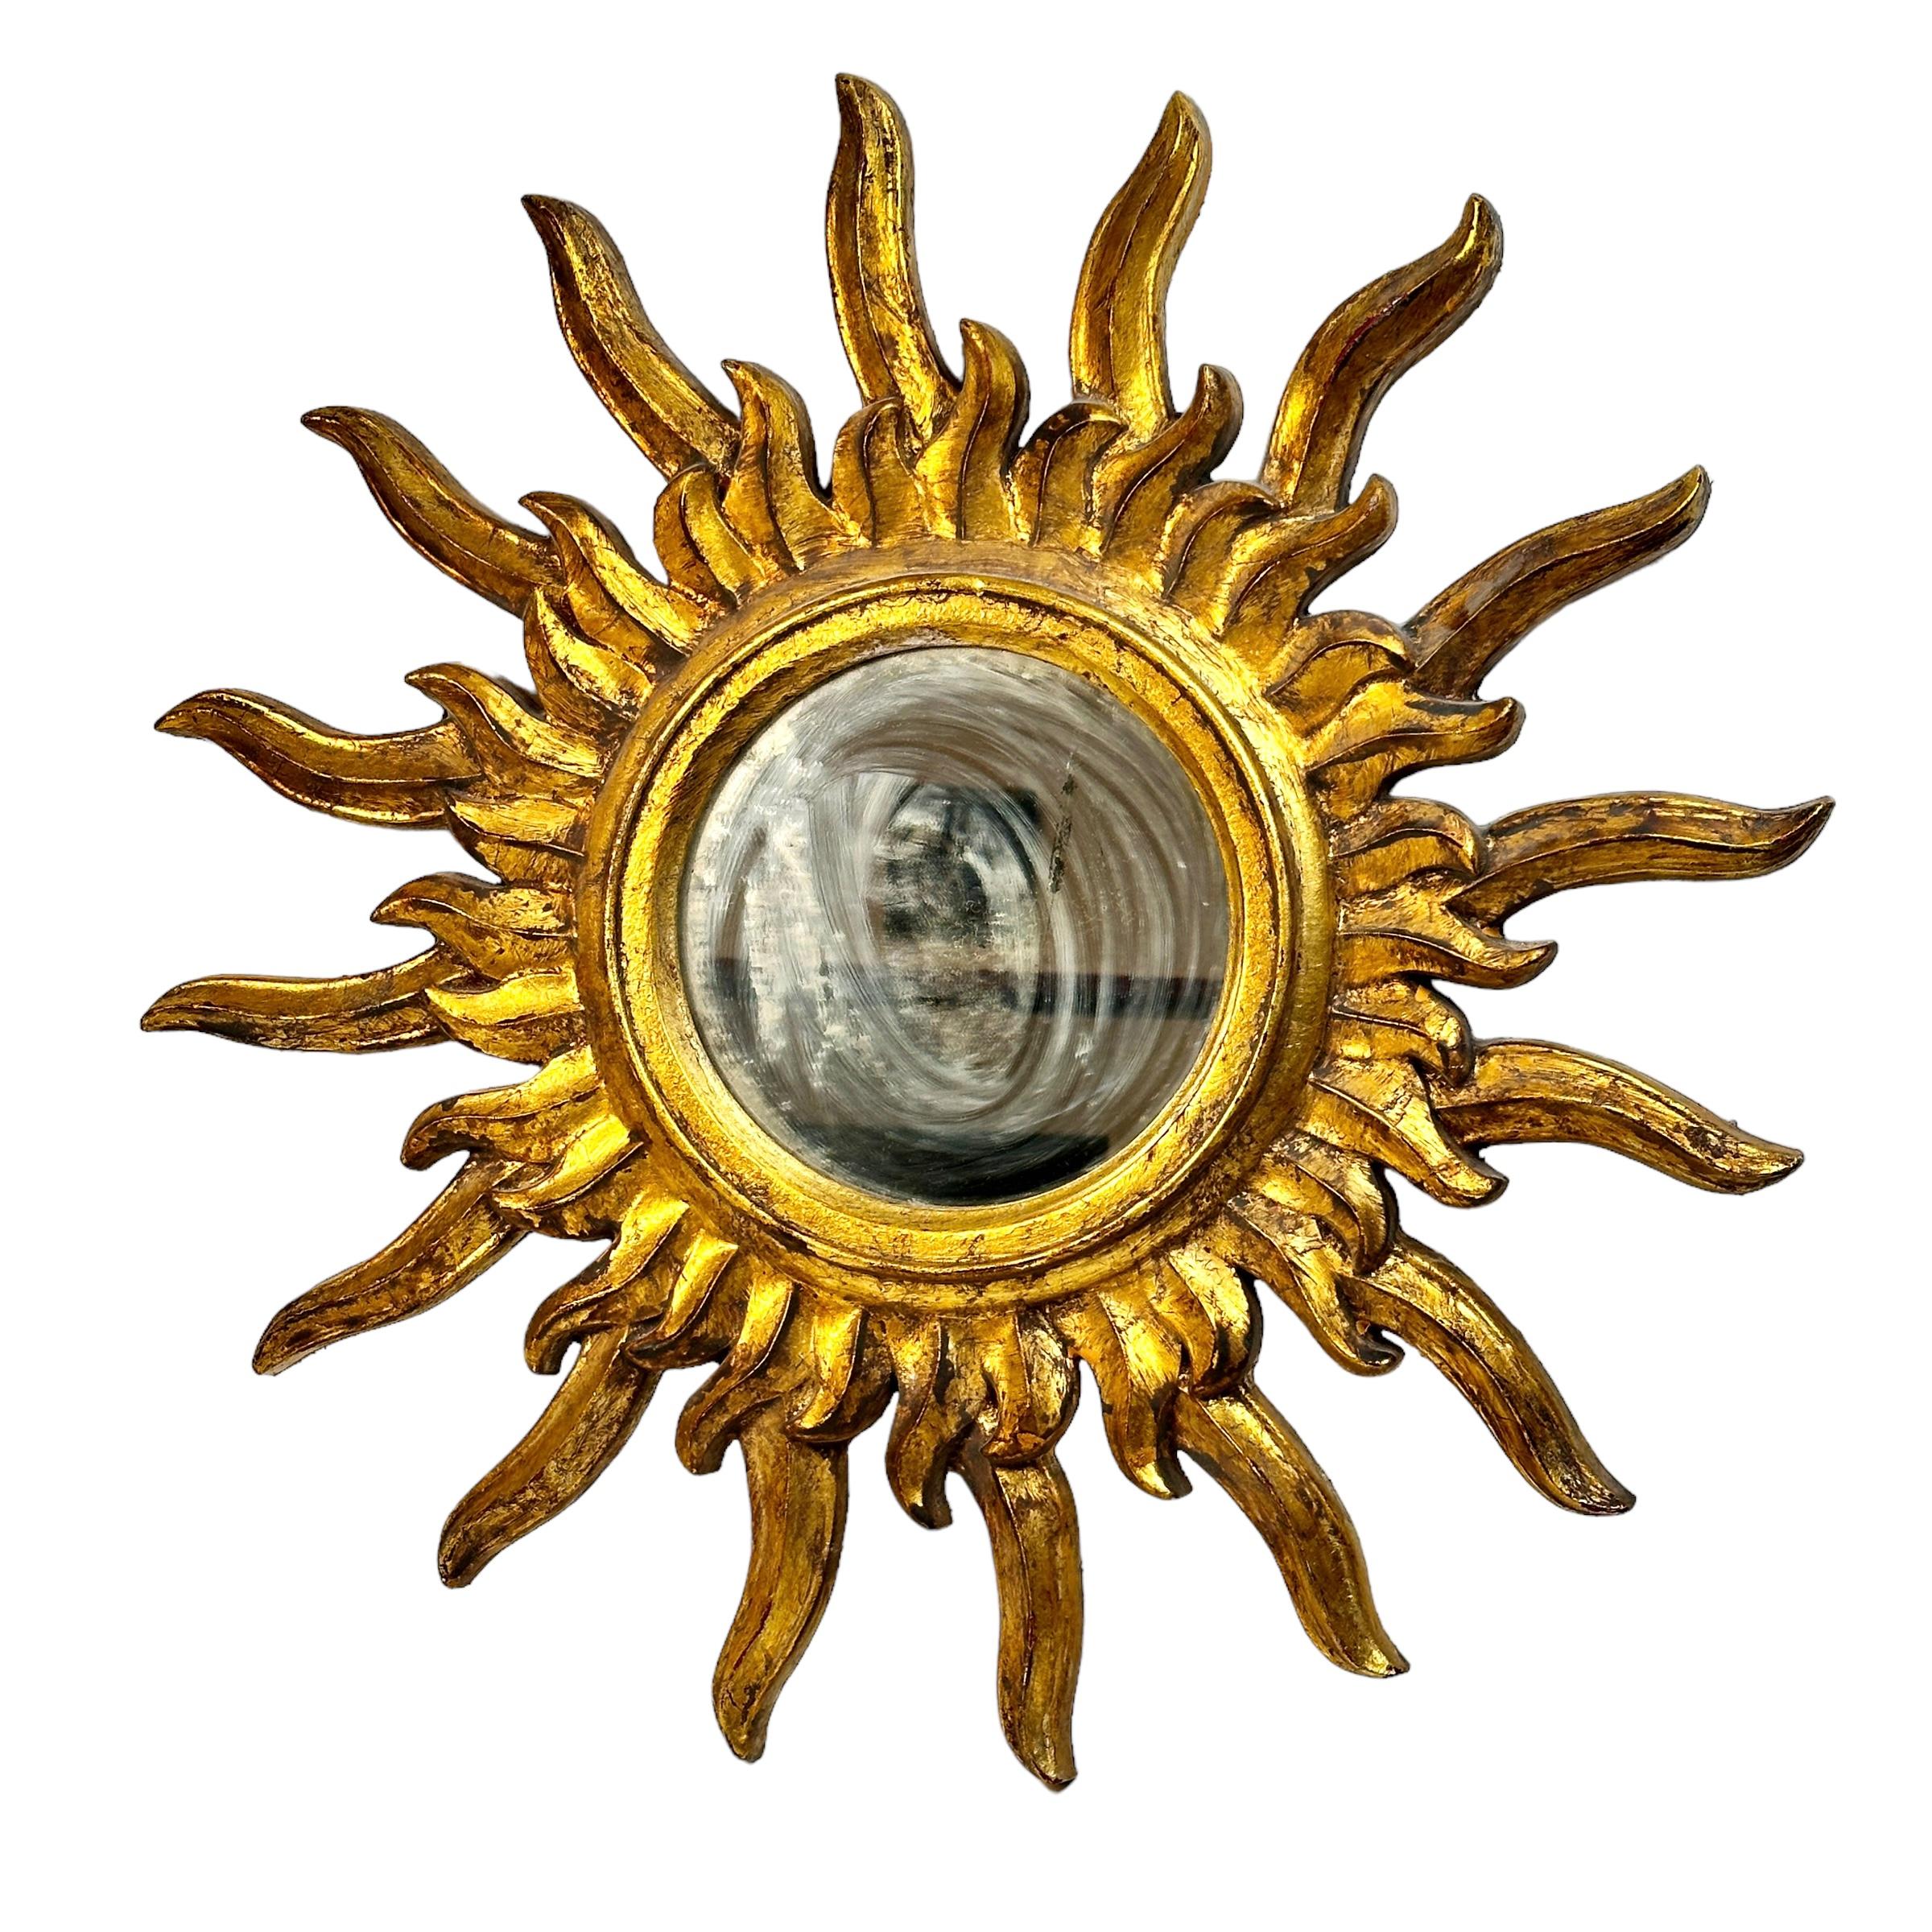 Un ensemble de deux magnifiques miroirs en forme de soleil ou d'étoile. Fabriqué en bois doré. Chaque pièce mesure environ 25,75 pouces de diamètre. Le miroir lui-même a un diamètre d'environ 8,5 pouces. Il se trouve à environ 1.75